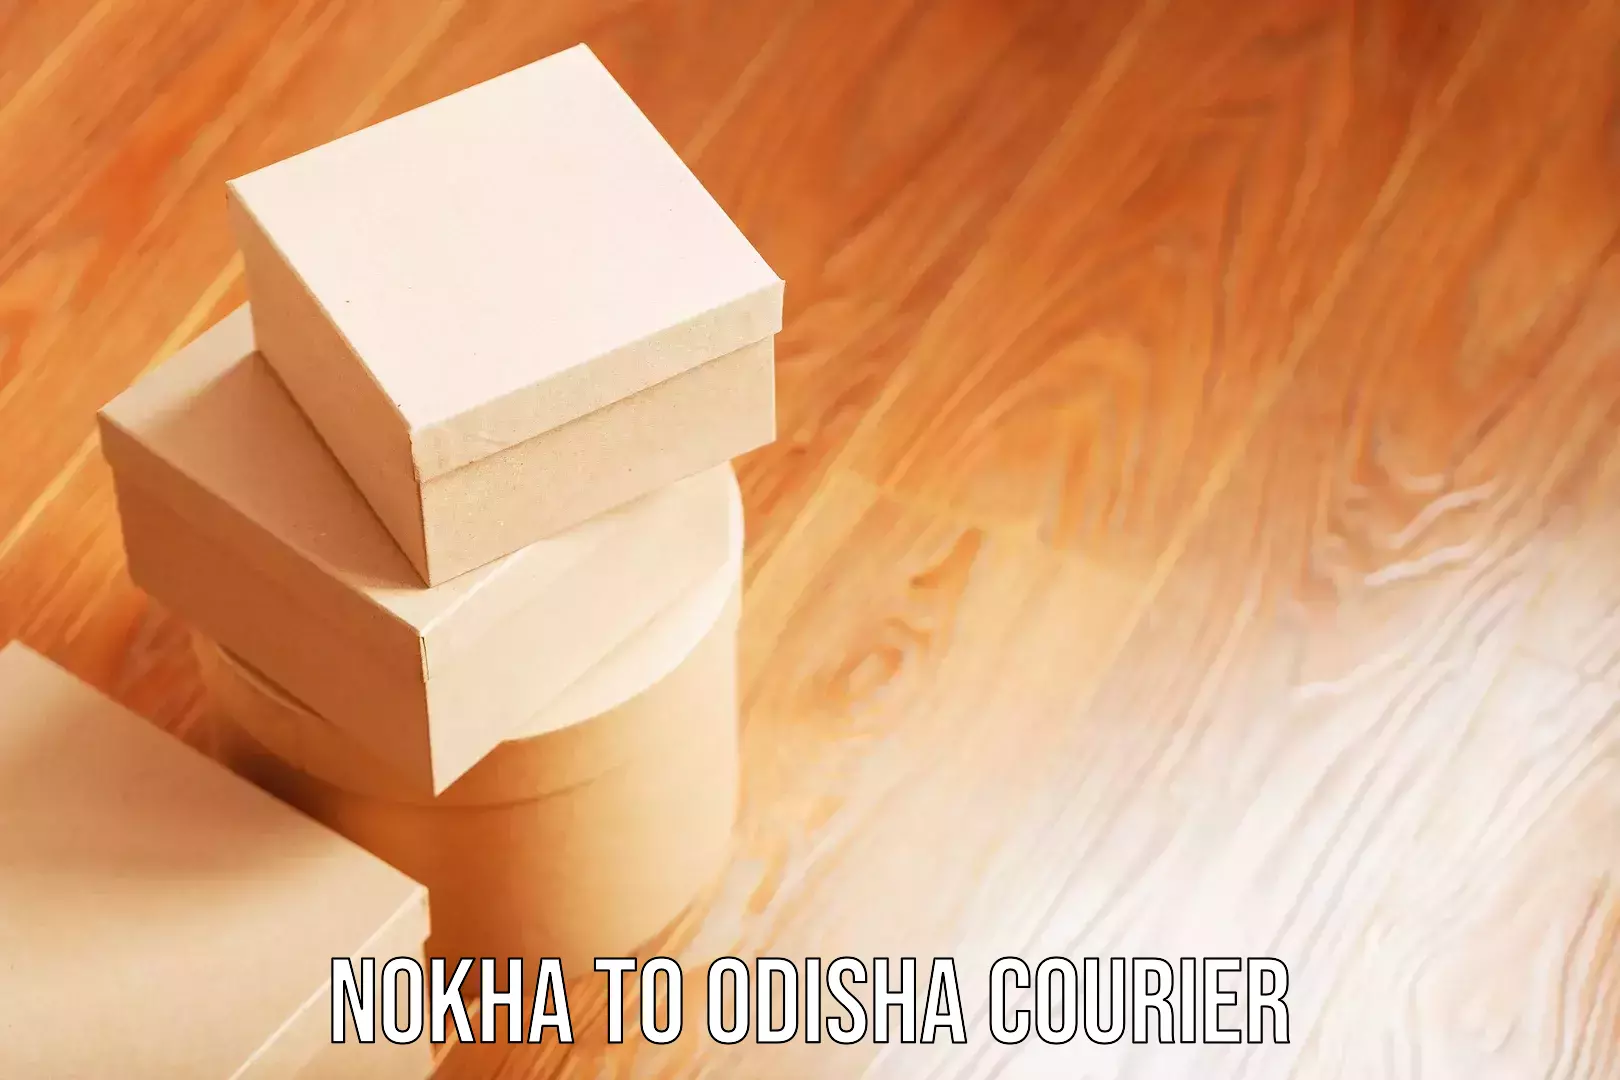 Luggage delivery network Nokha to Odisha